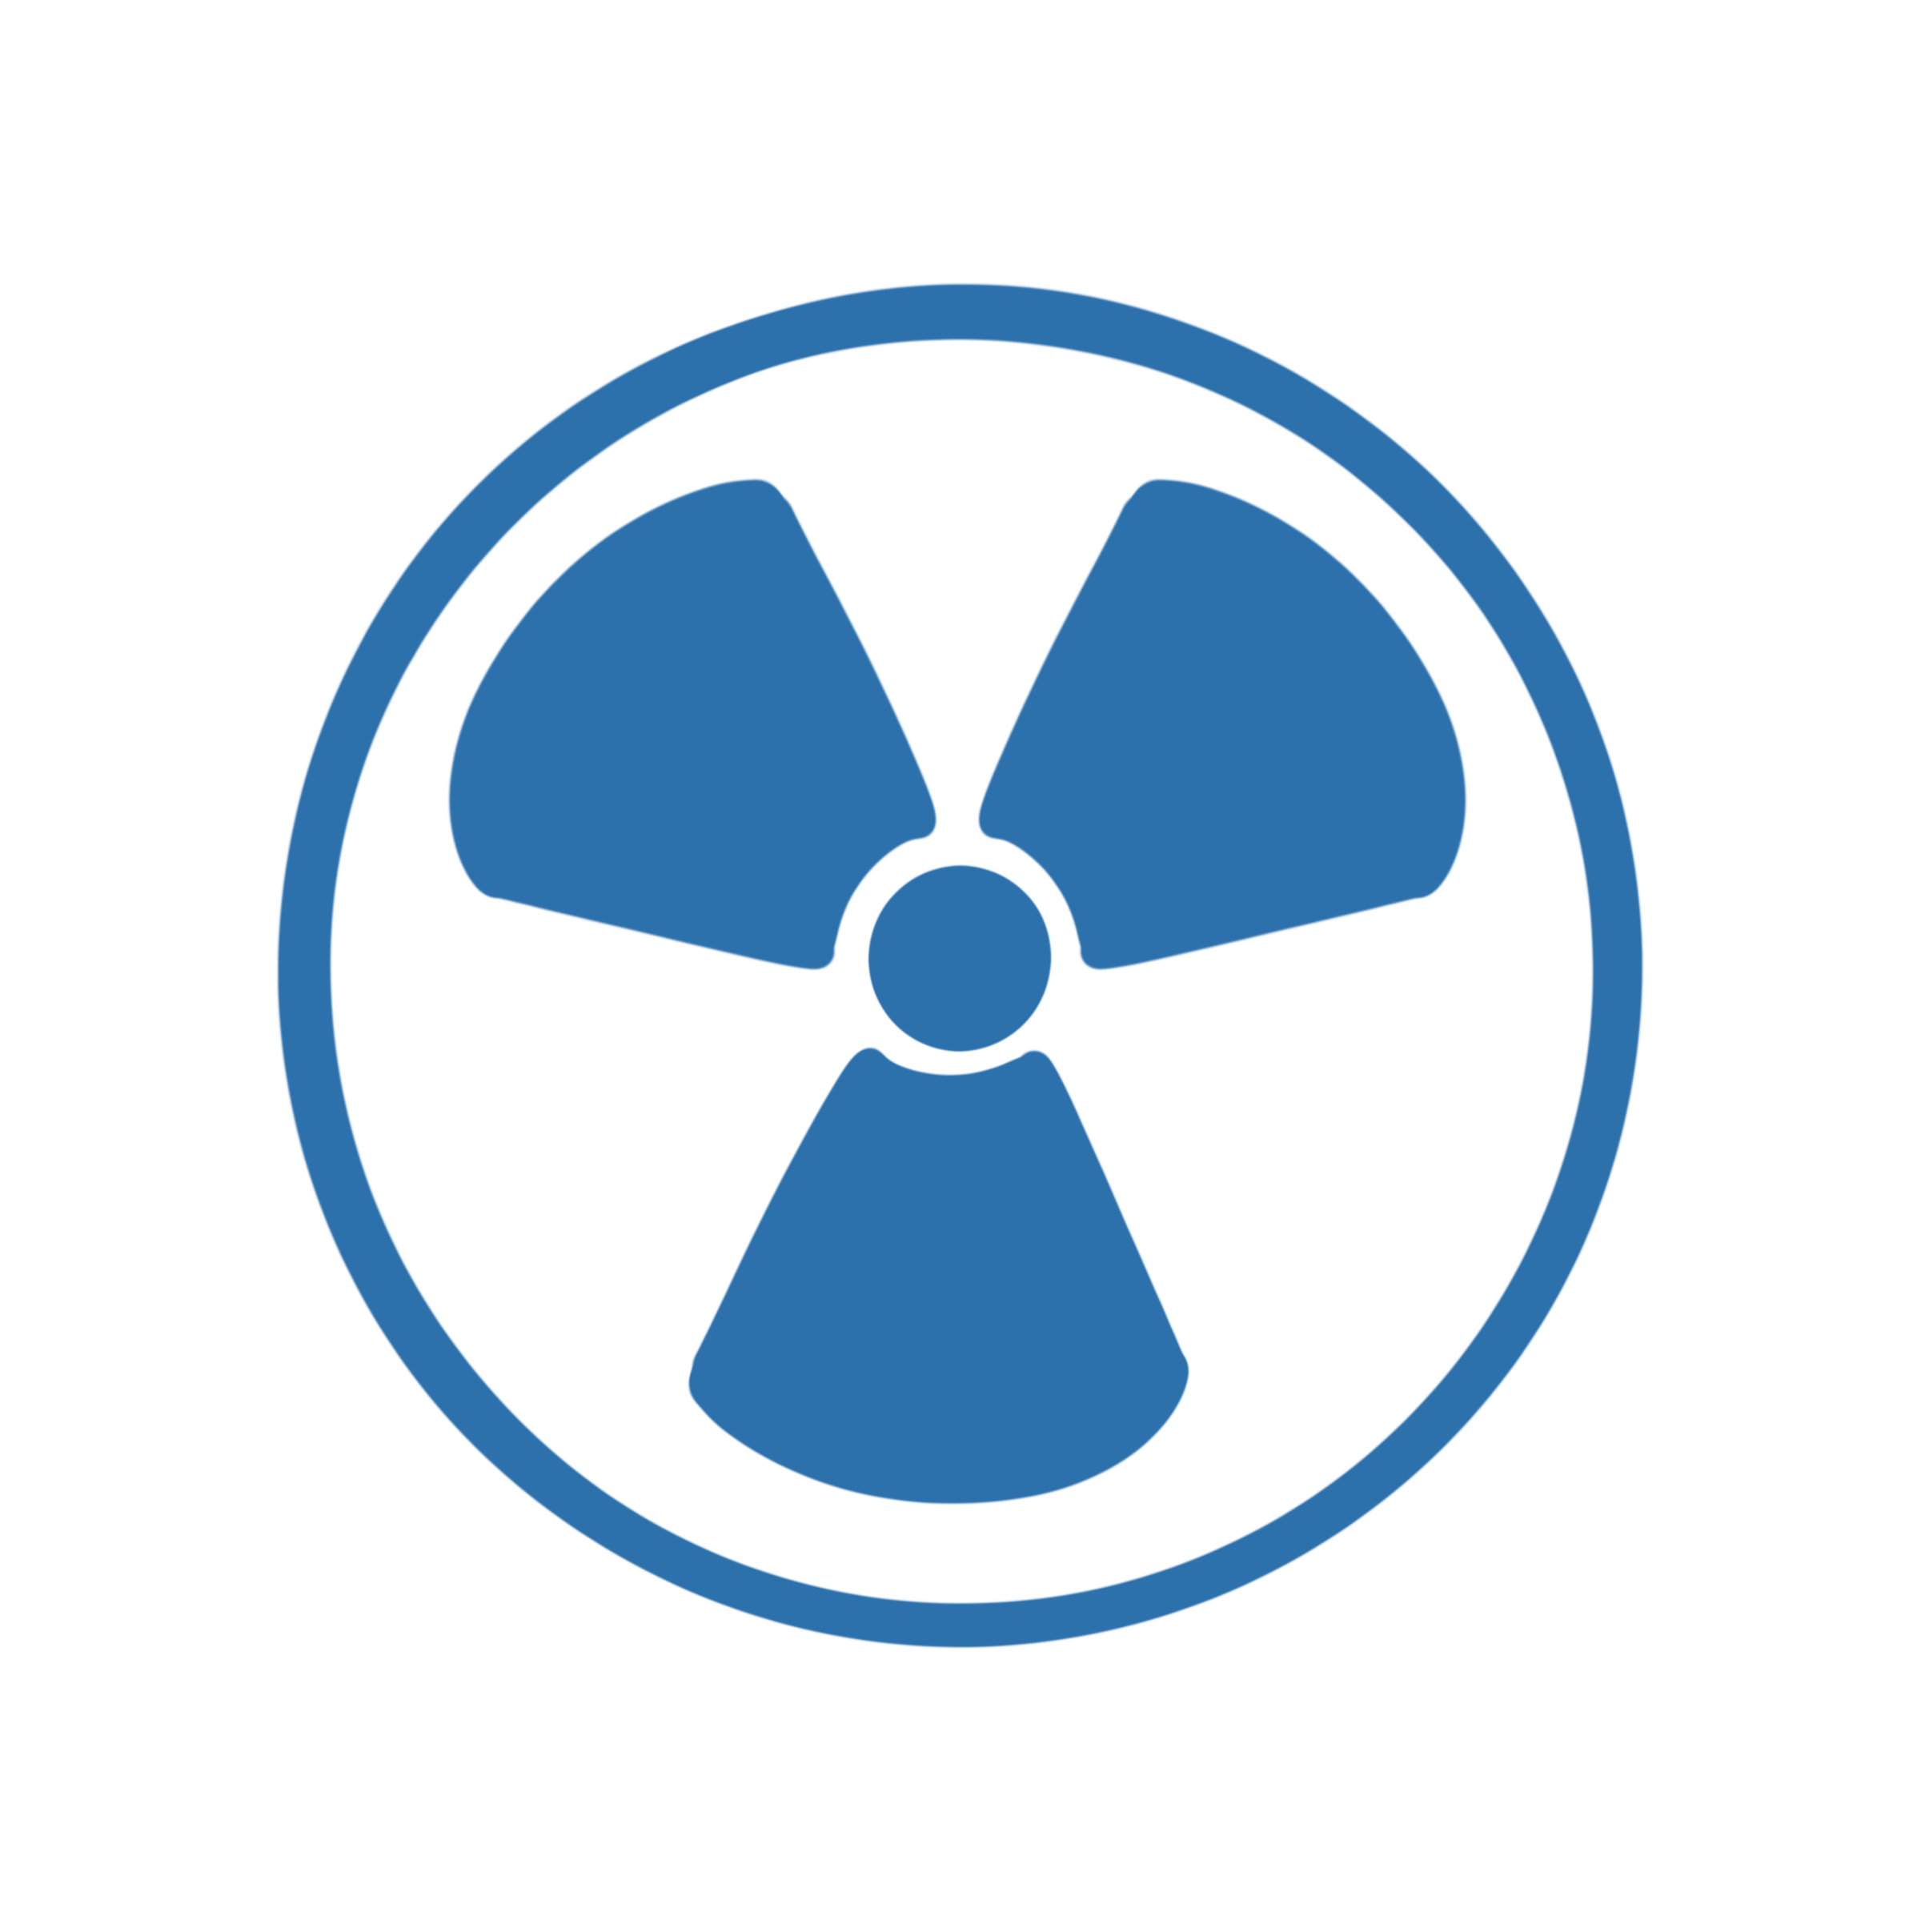 Illustration des Radioaktivitätssymbol mit einem Rad mit drei Flügeln